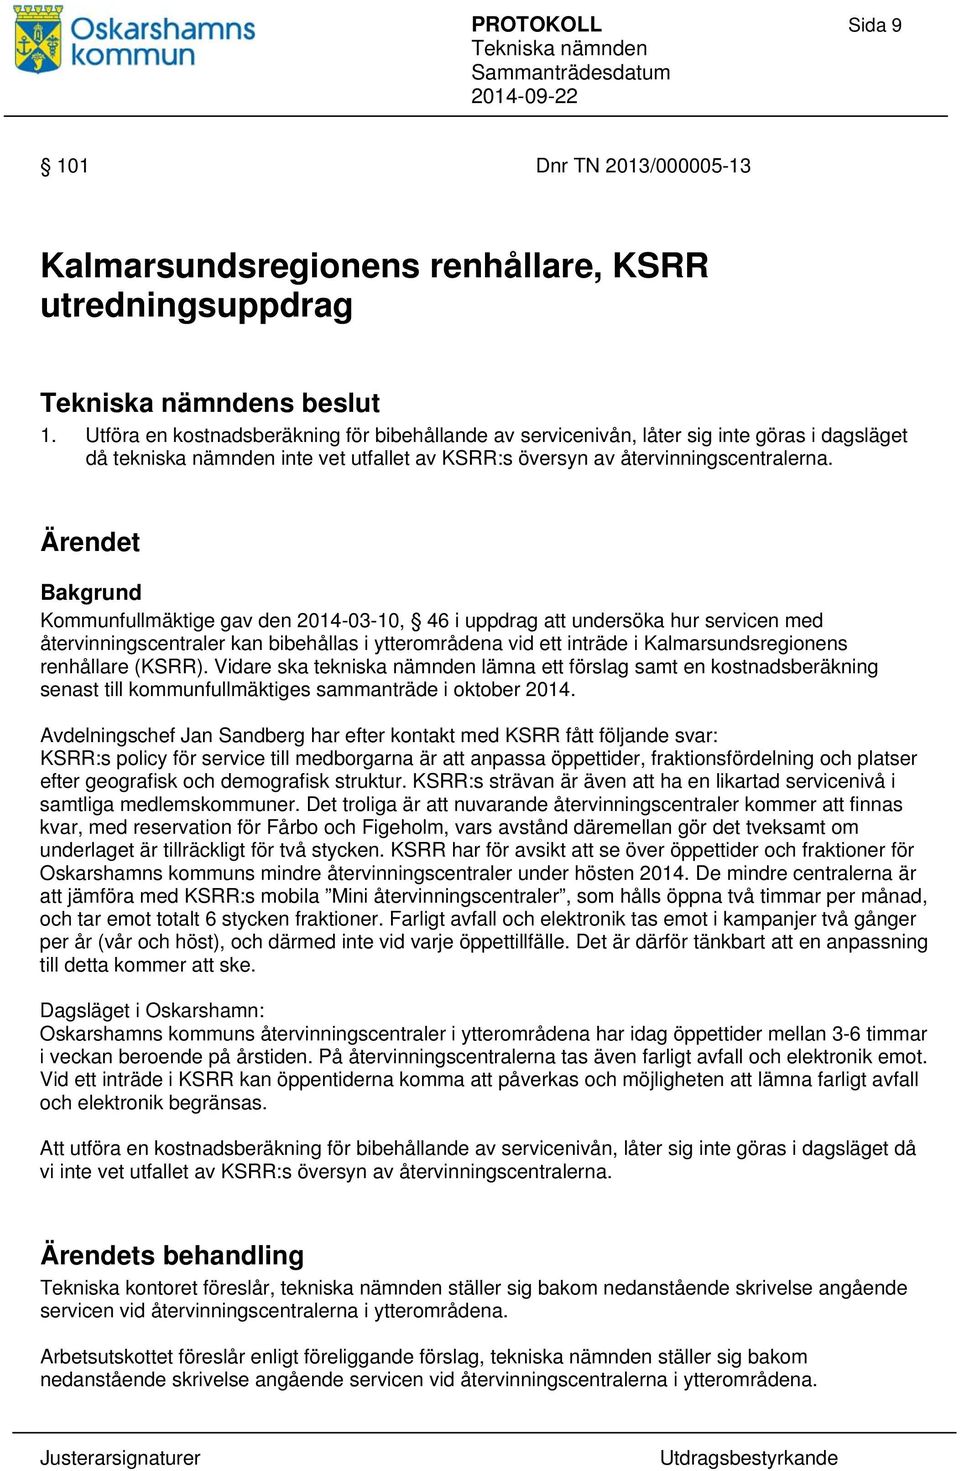 Ärendet Bakgrund Kommunfullmäktige gav den 2014-03-10, 46 i uppdrag att undersöka hur servicen med återvinningscentraler kan bibehållas i ytterområdena vid ett inträde i Kalmarsundsregionens